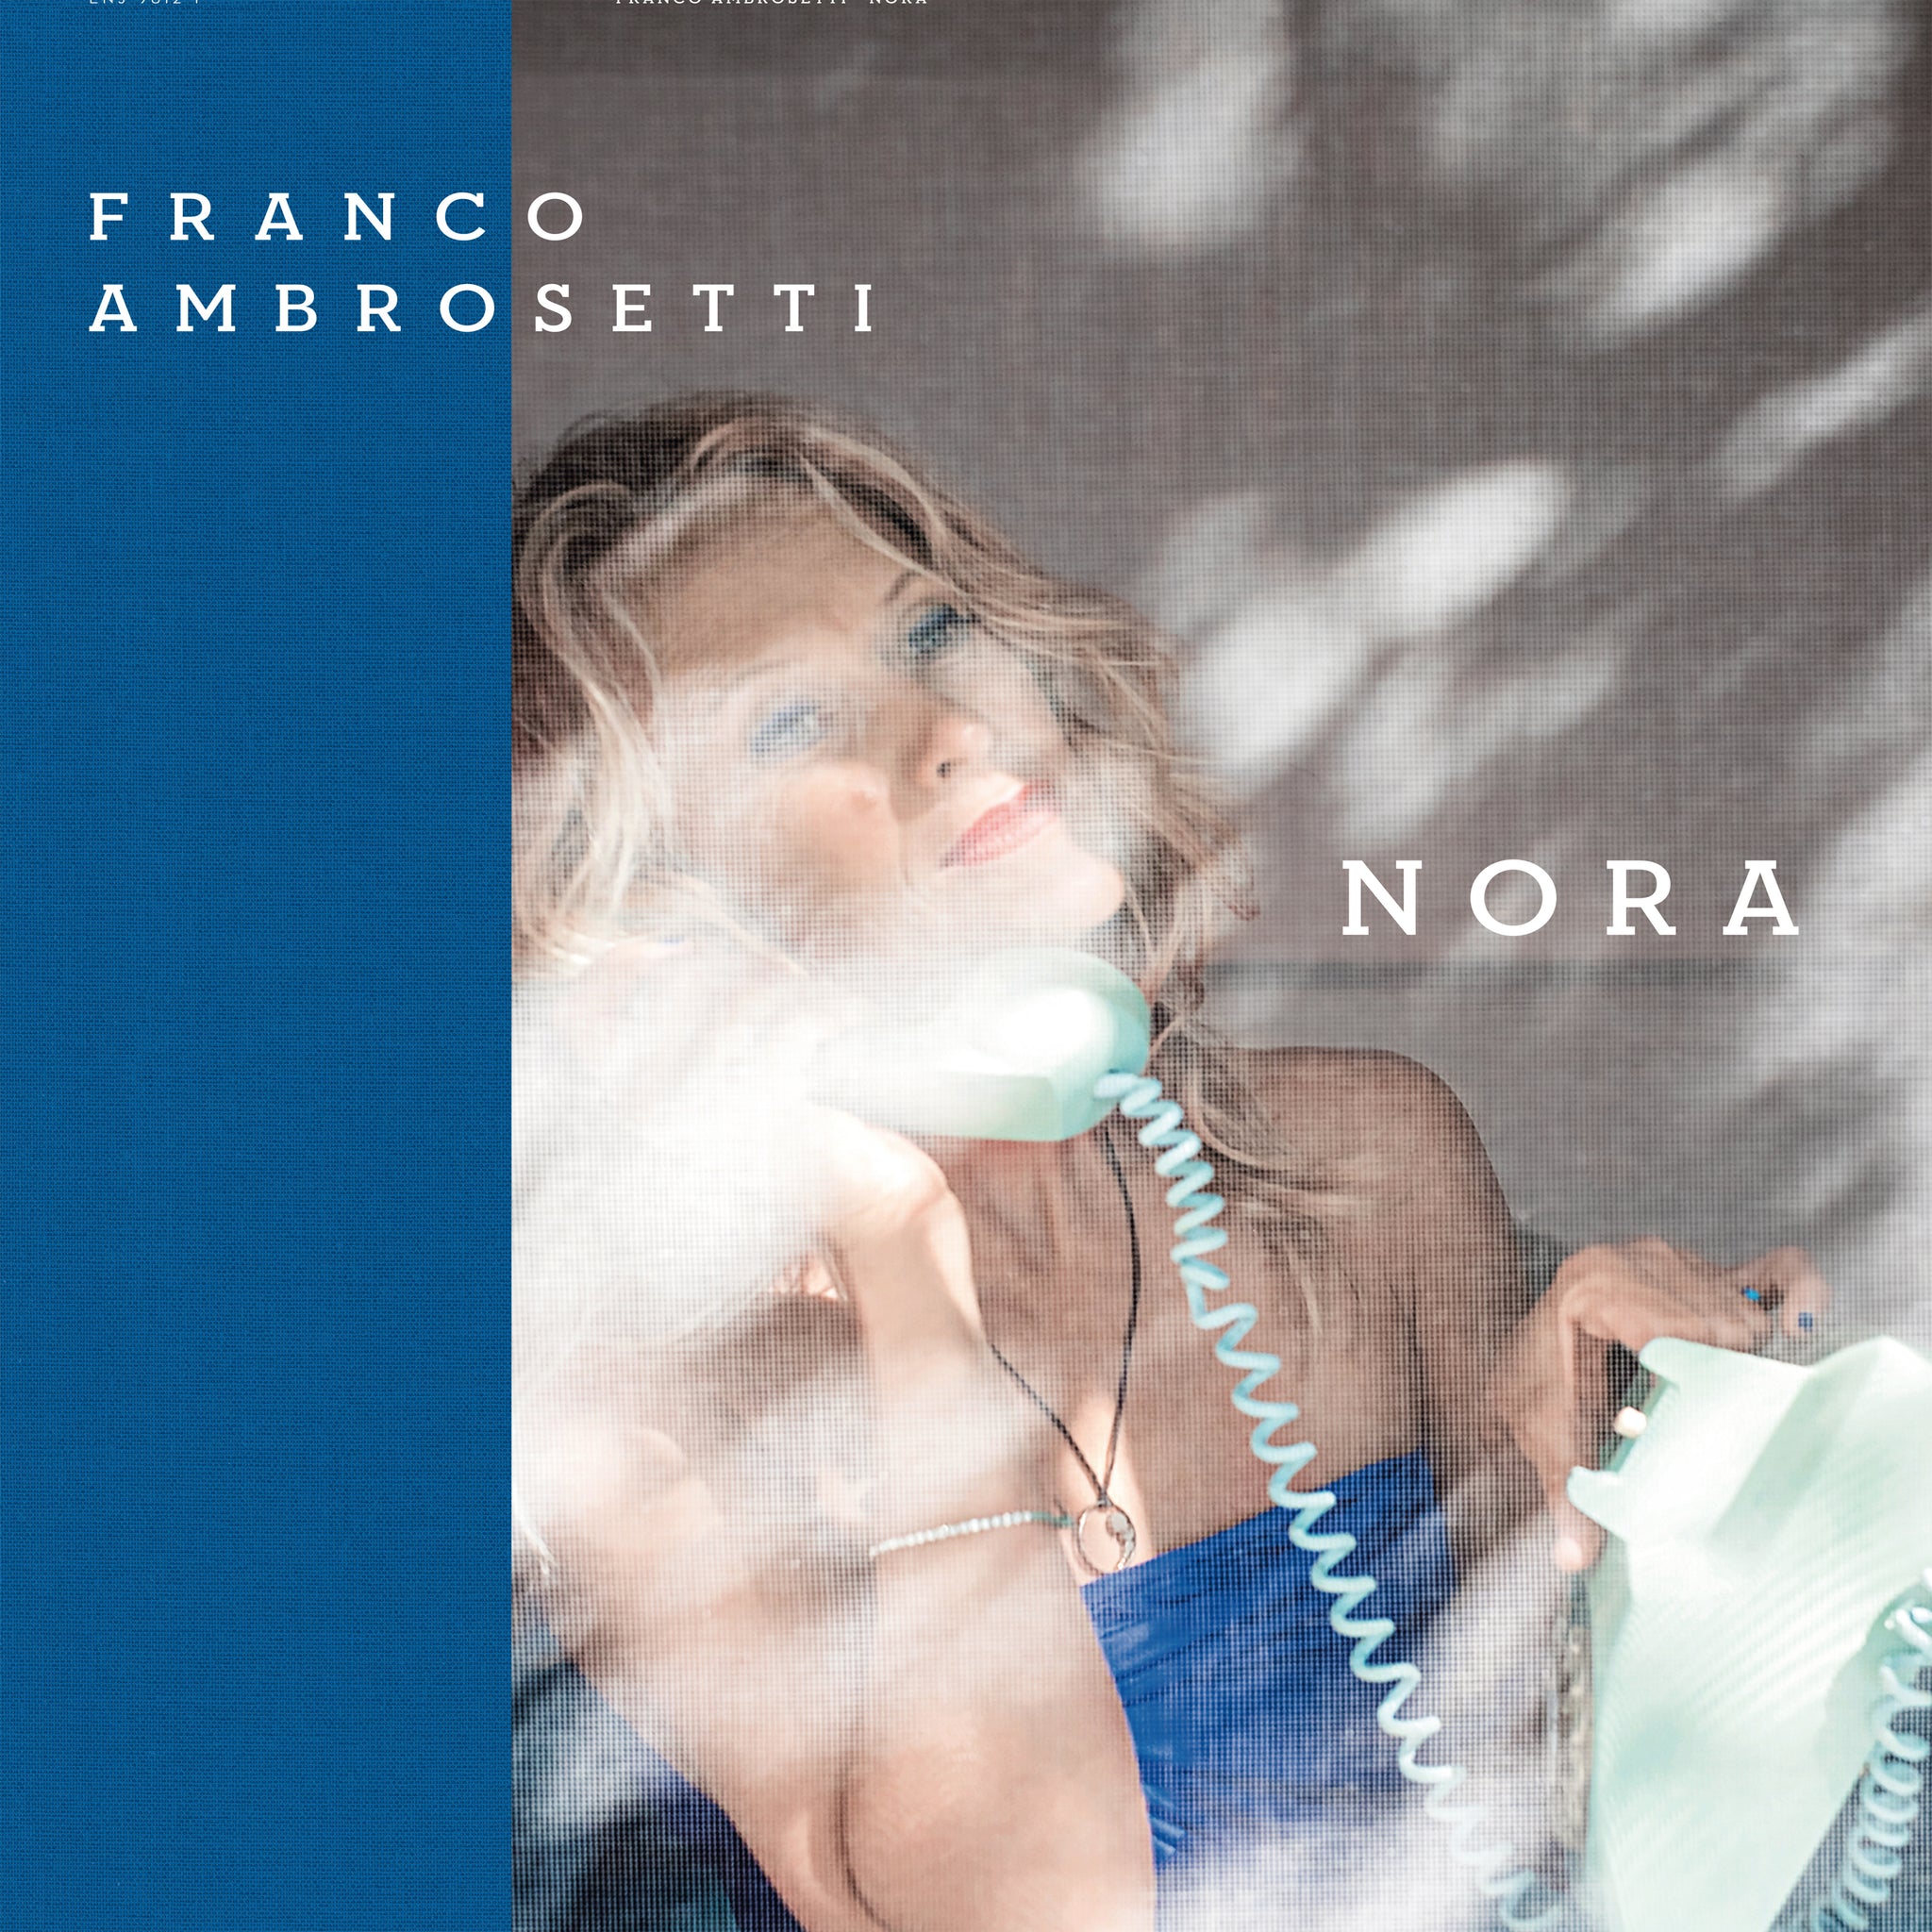 Franco Ambrosetti: Nora / Caine, Colley, Erskine, Scofield